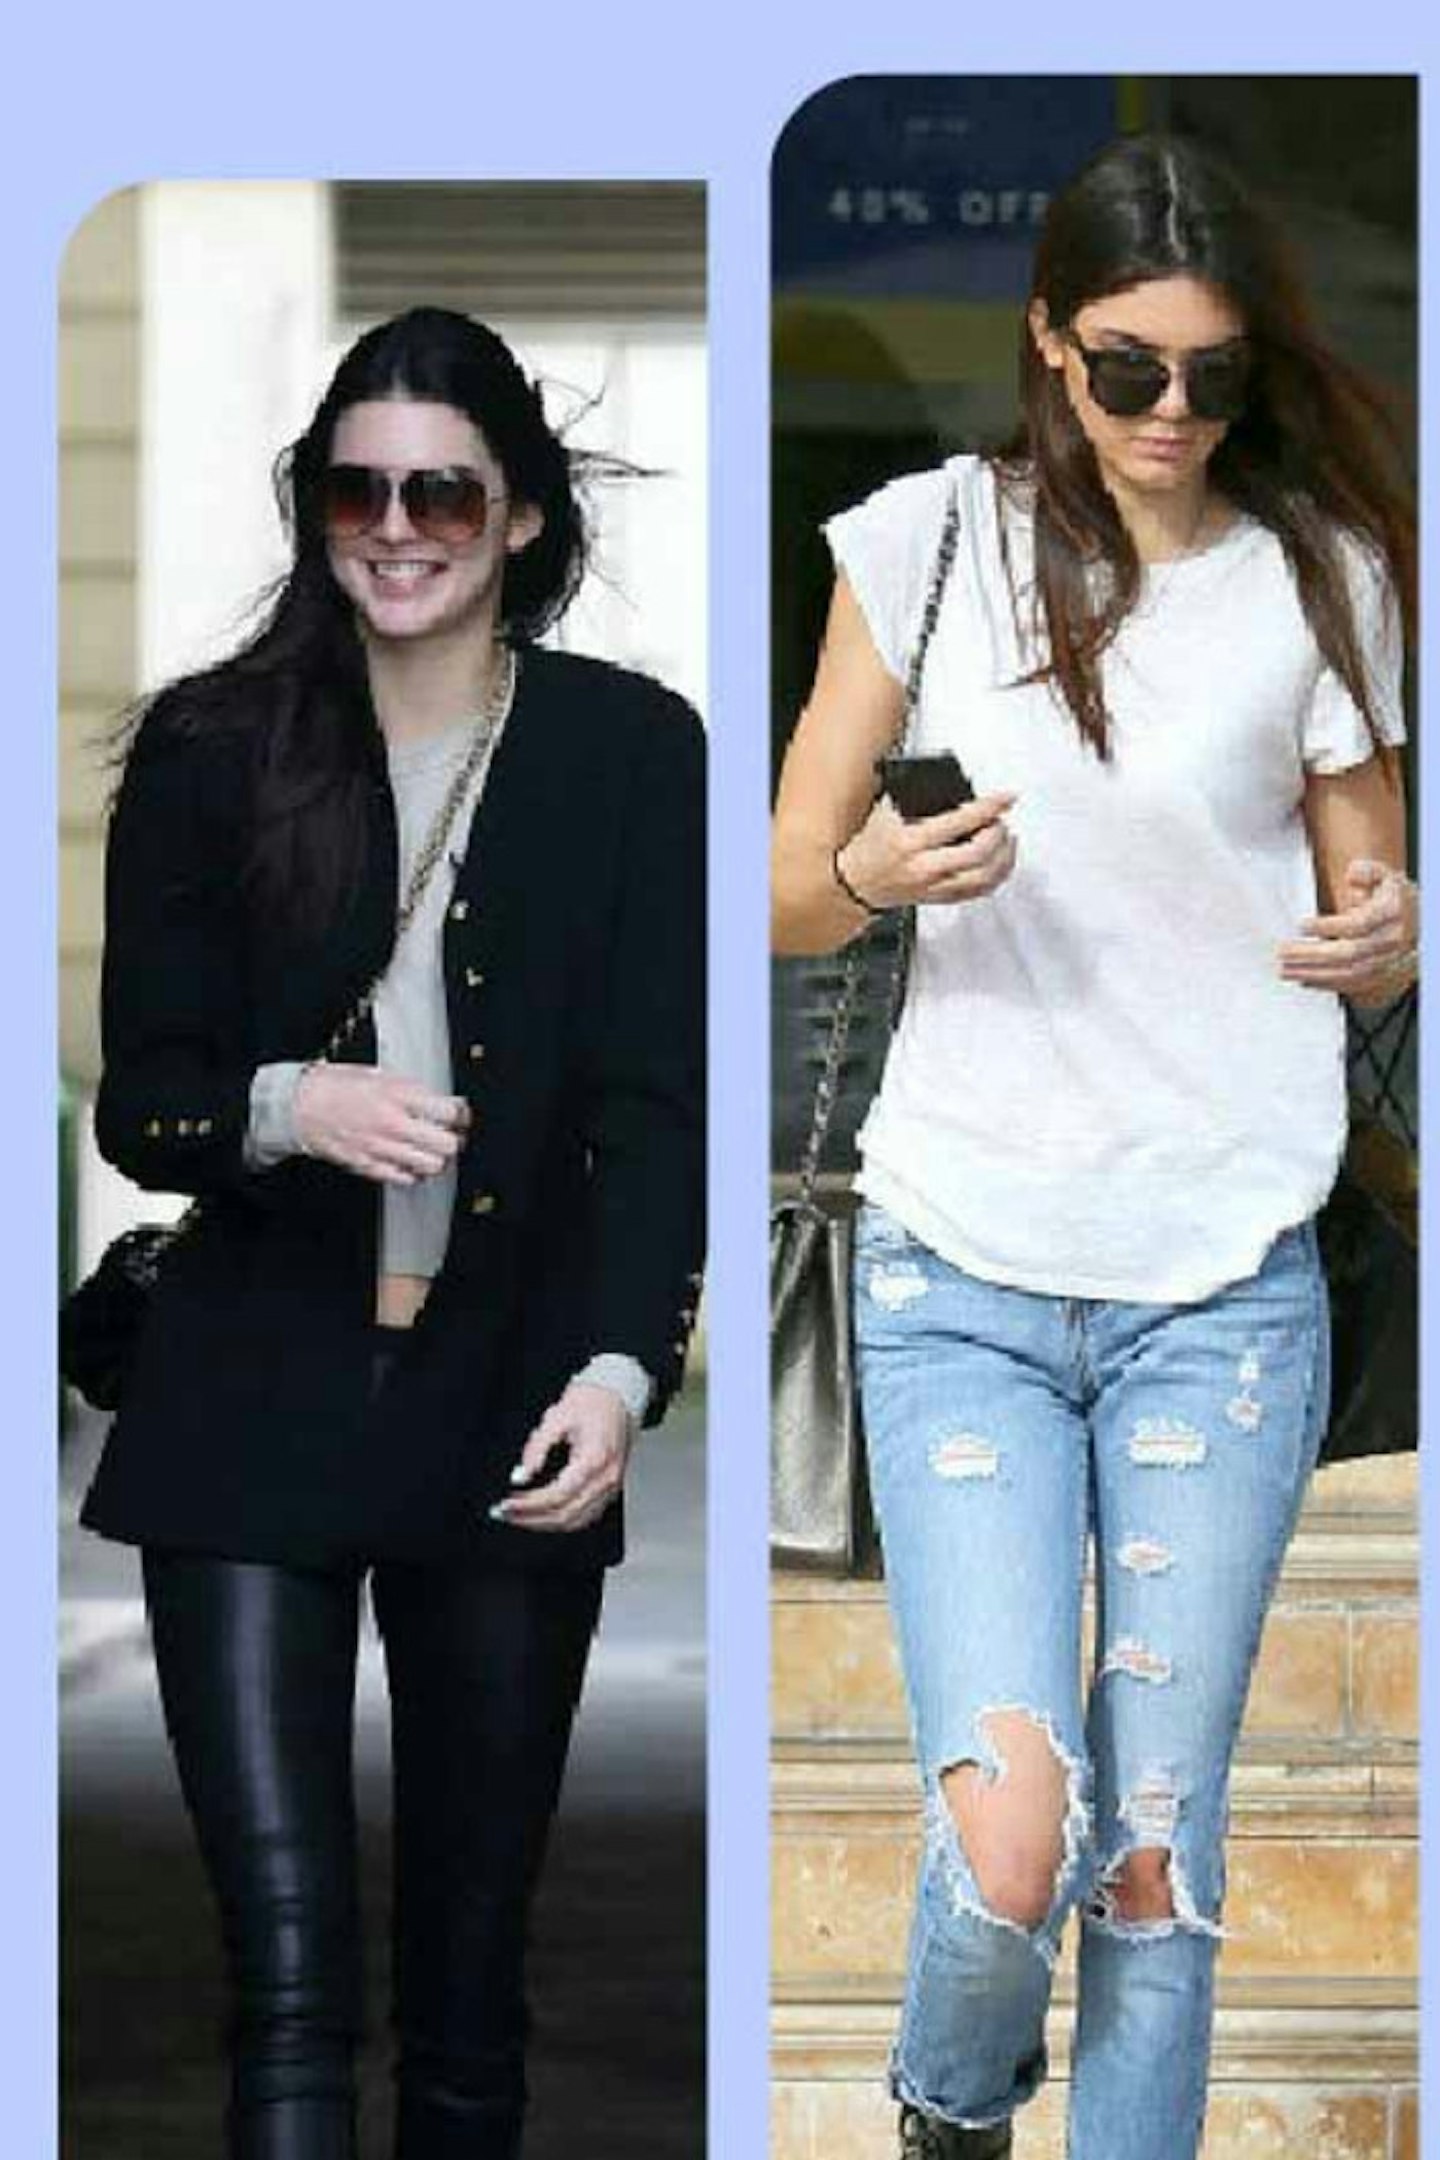 GALLERY >> Inside Kendall Jenner's Model Wardrobe